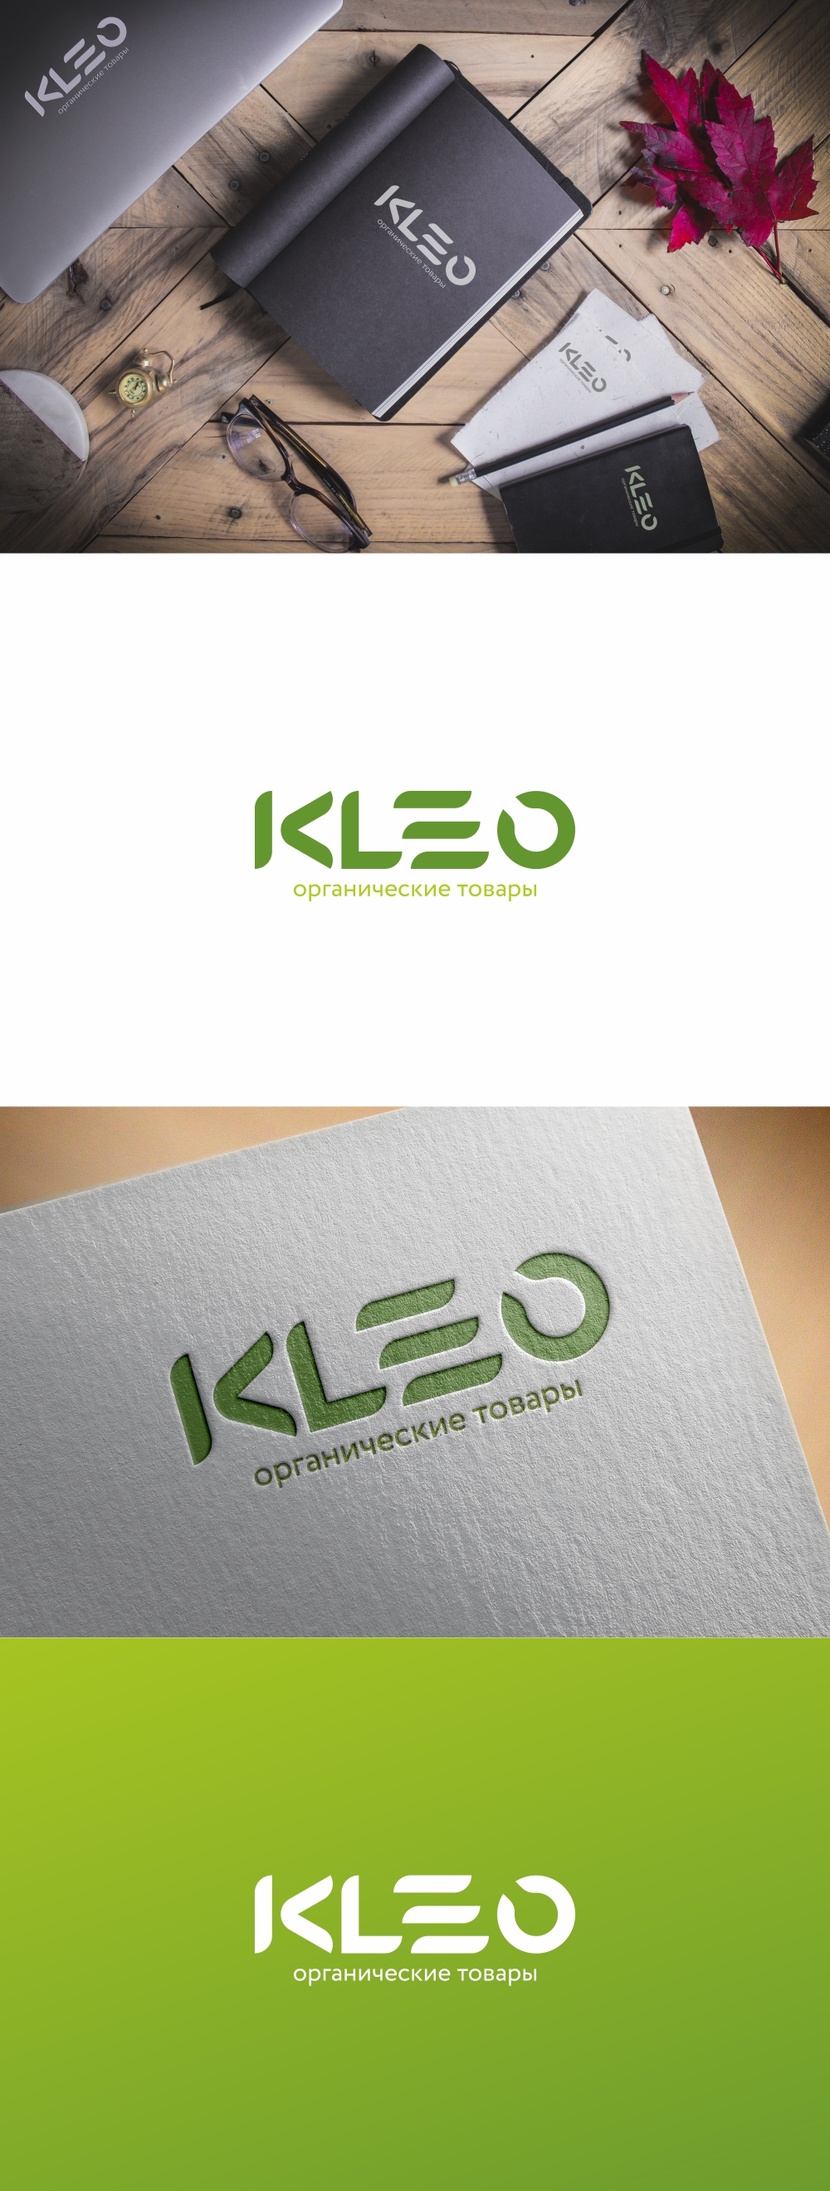 Логотип и фирменный стиль для оптовика органических товаров для семьи и дома  -  автор Андрей Мартынович